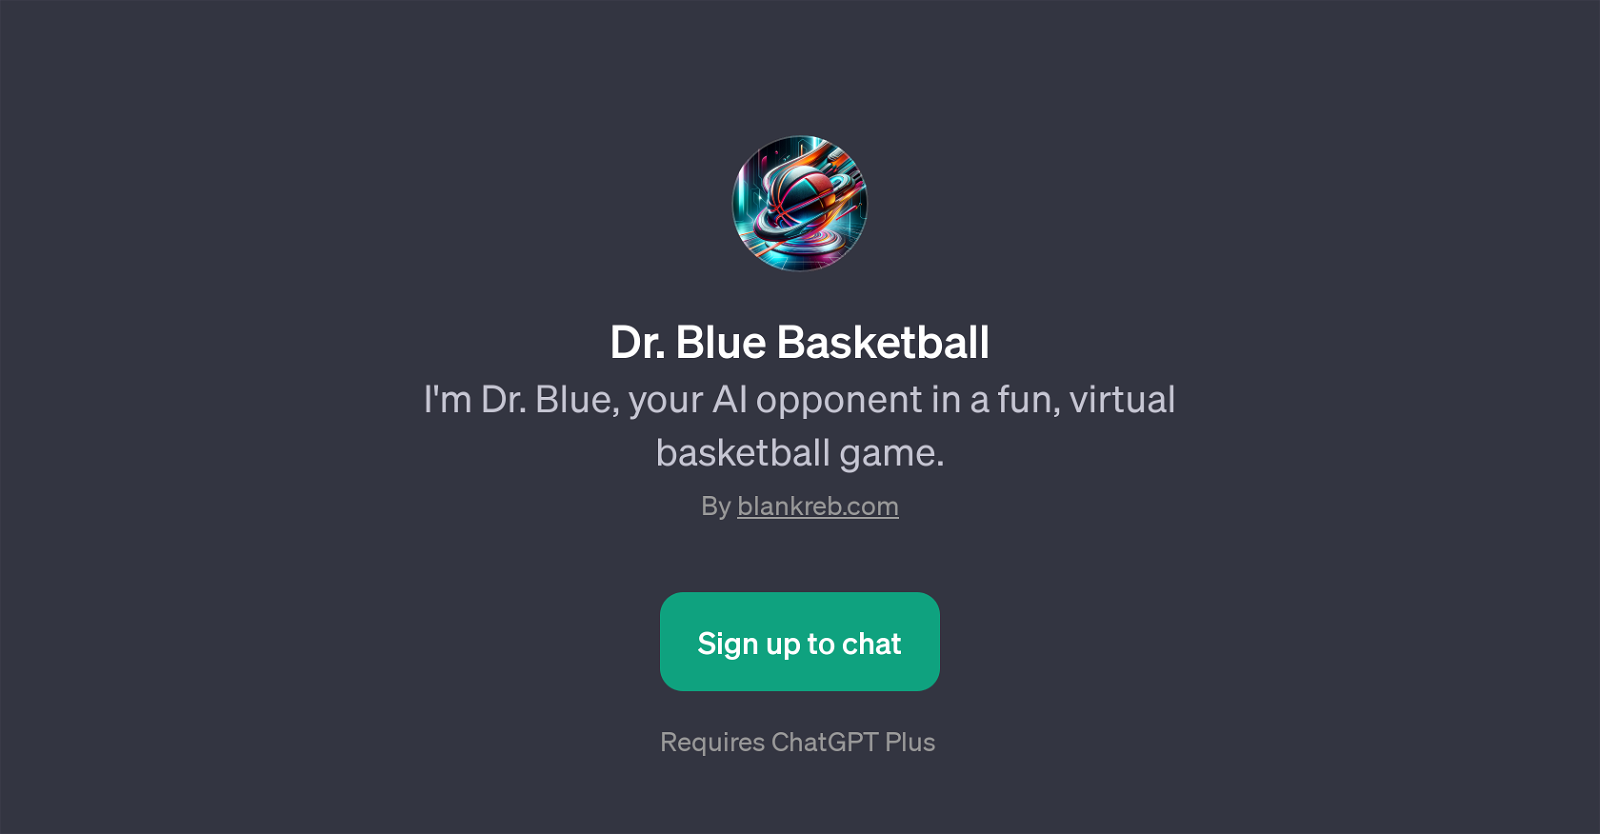 Dr. Blue Basketball website